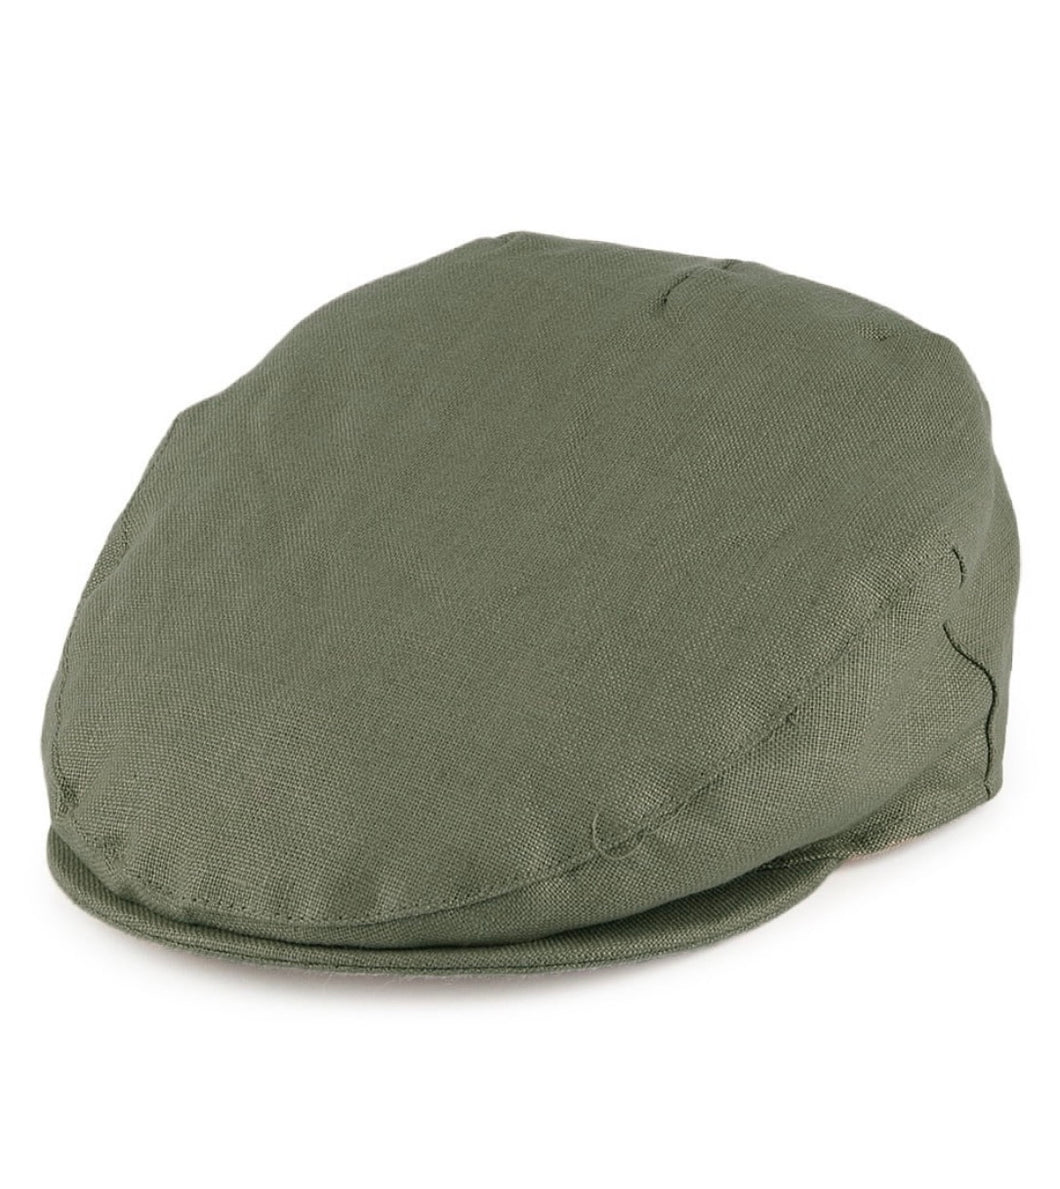 Failsworth - Flat cap - Irish Linen - Khaki